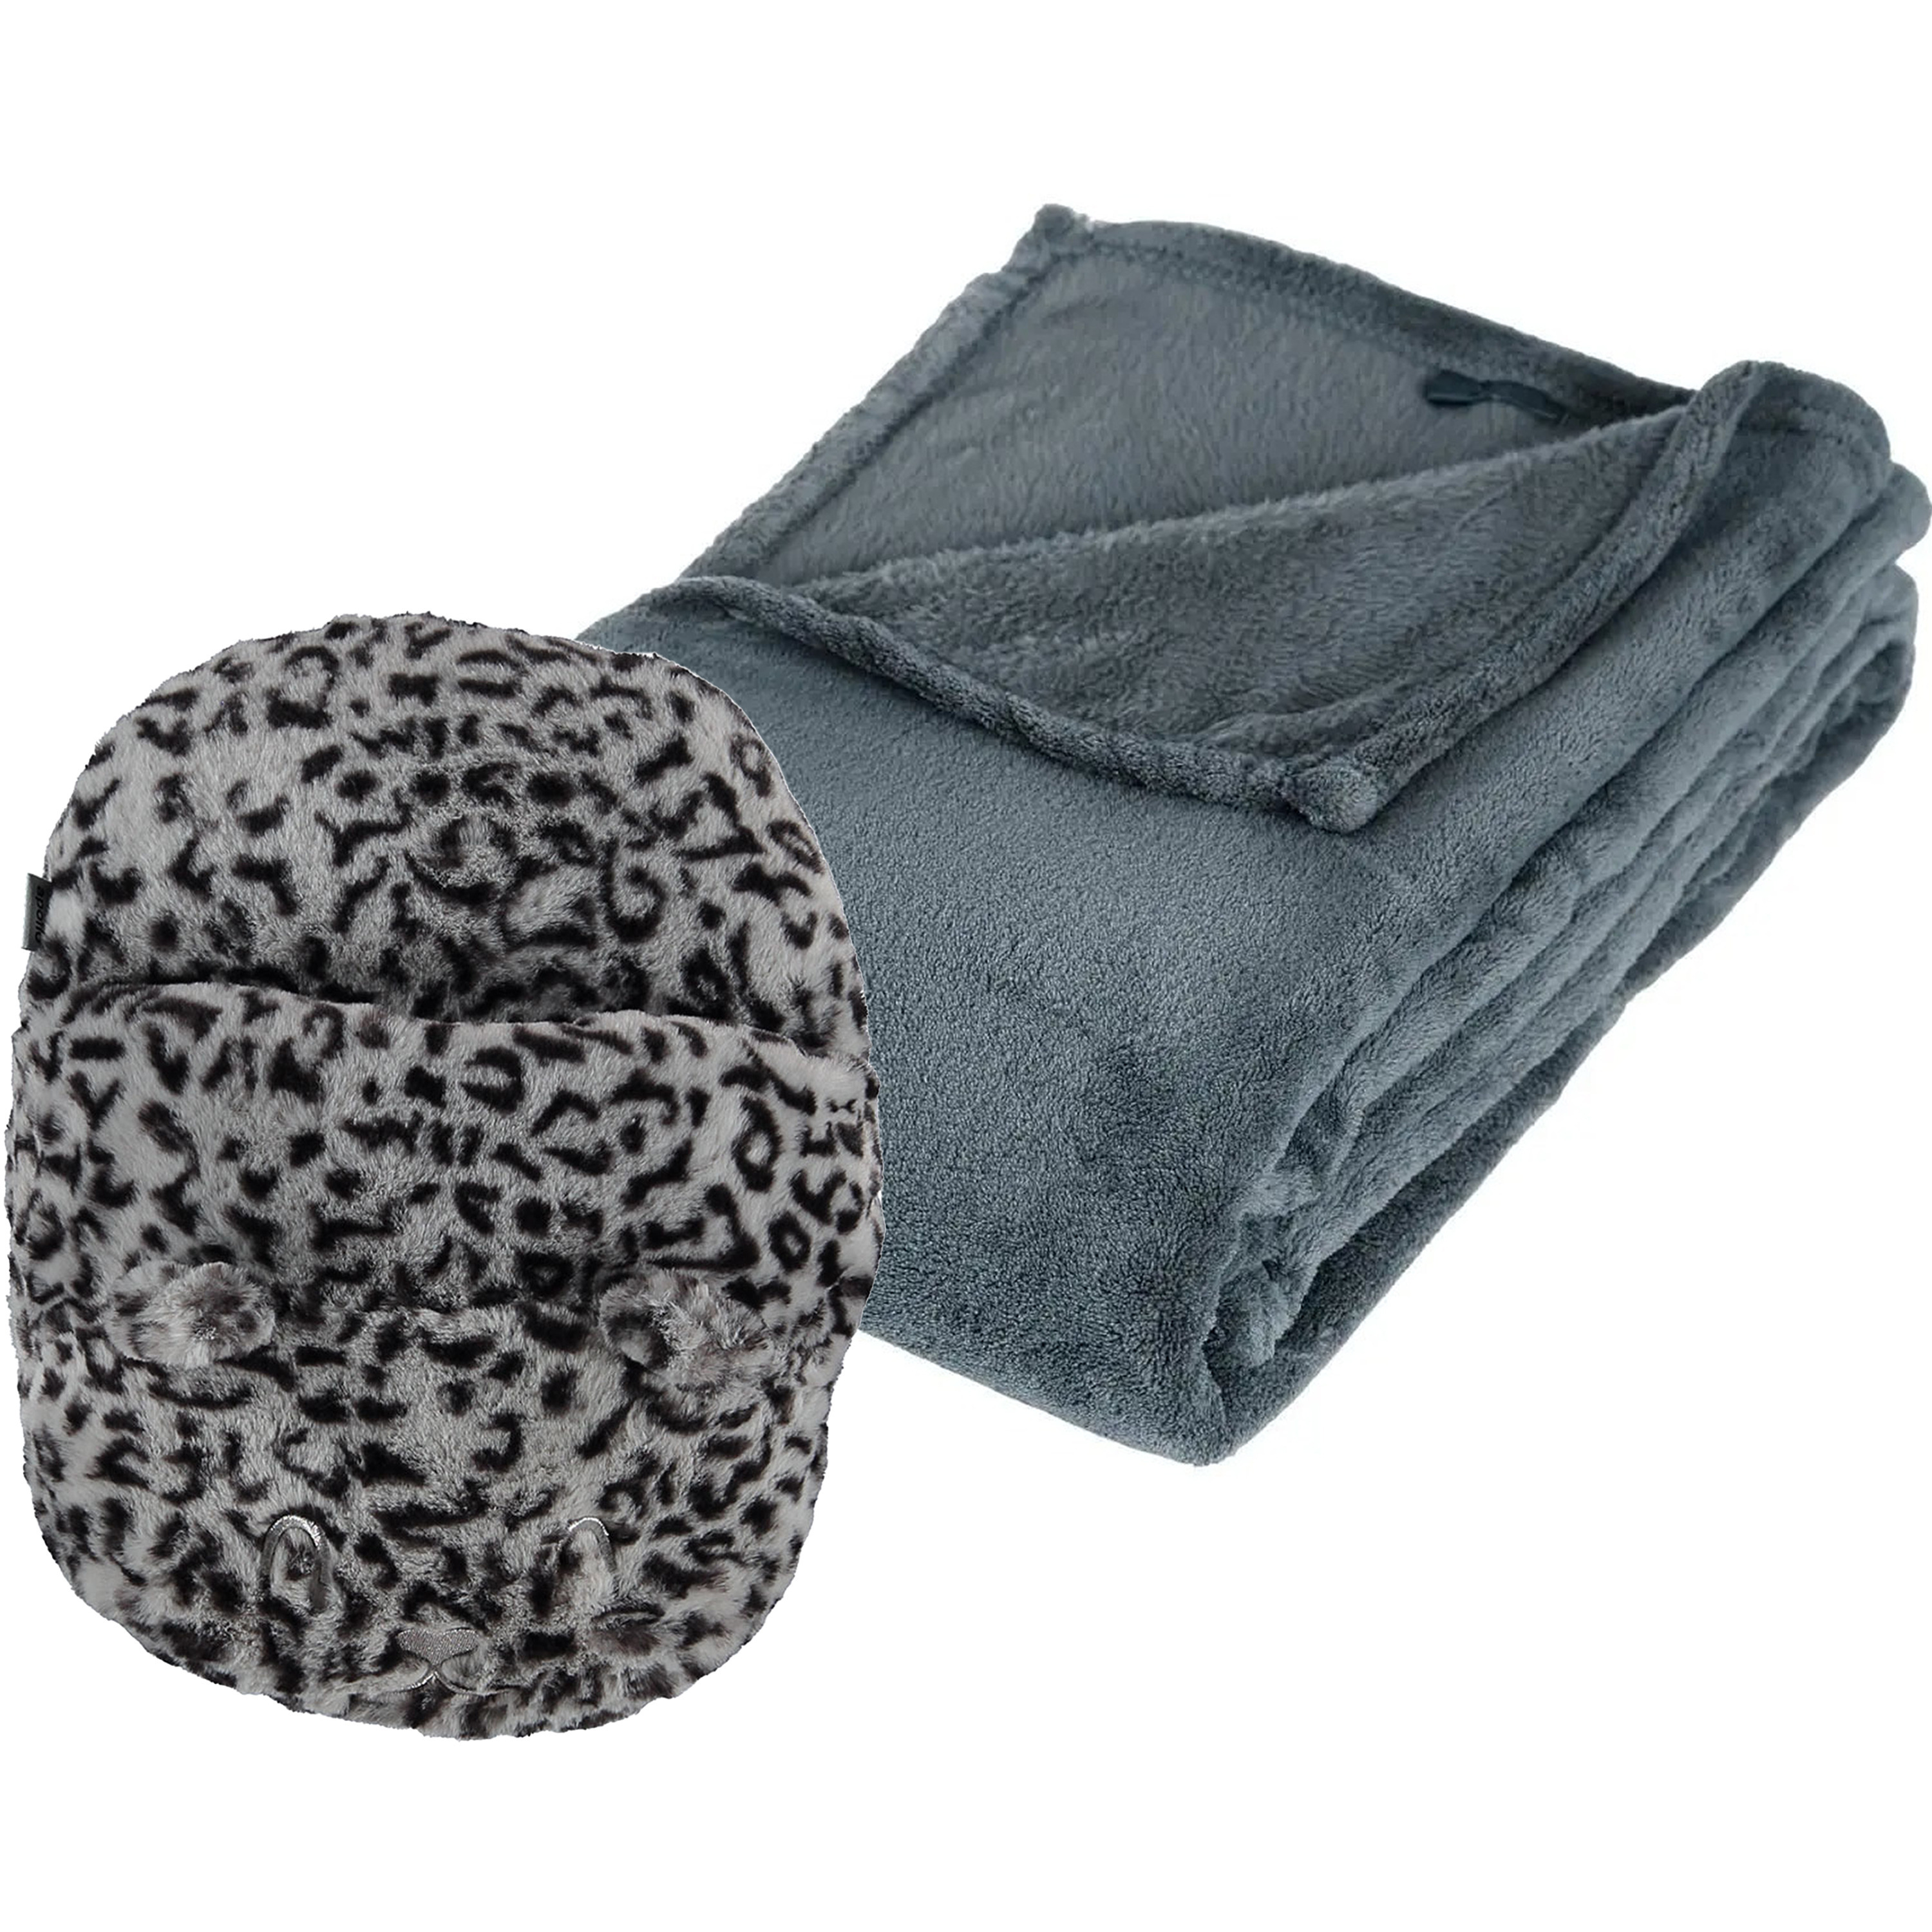 Fleece deken blauwgrijs 125 x 150 cm met voetenwarmer slof cheetah one size One size -